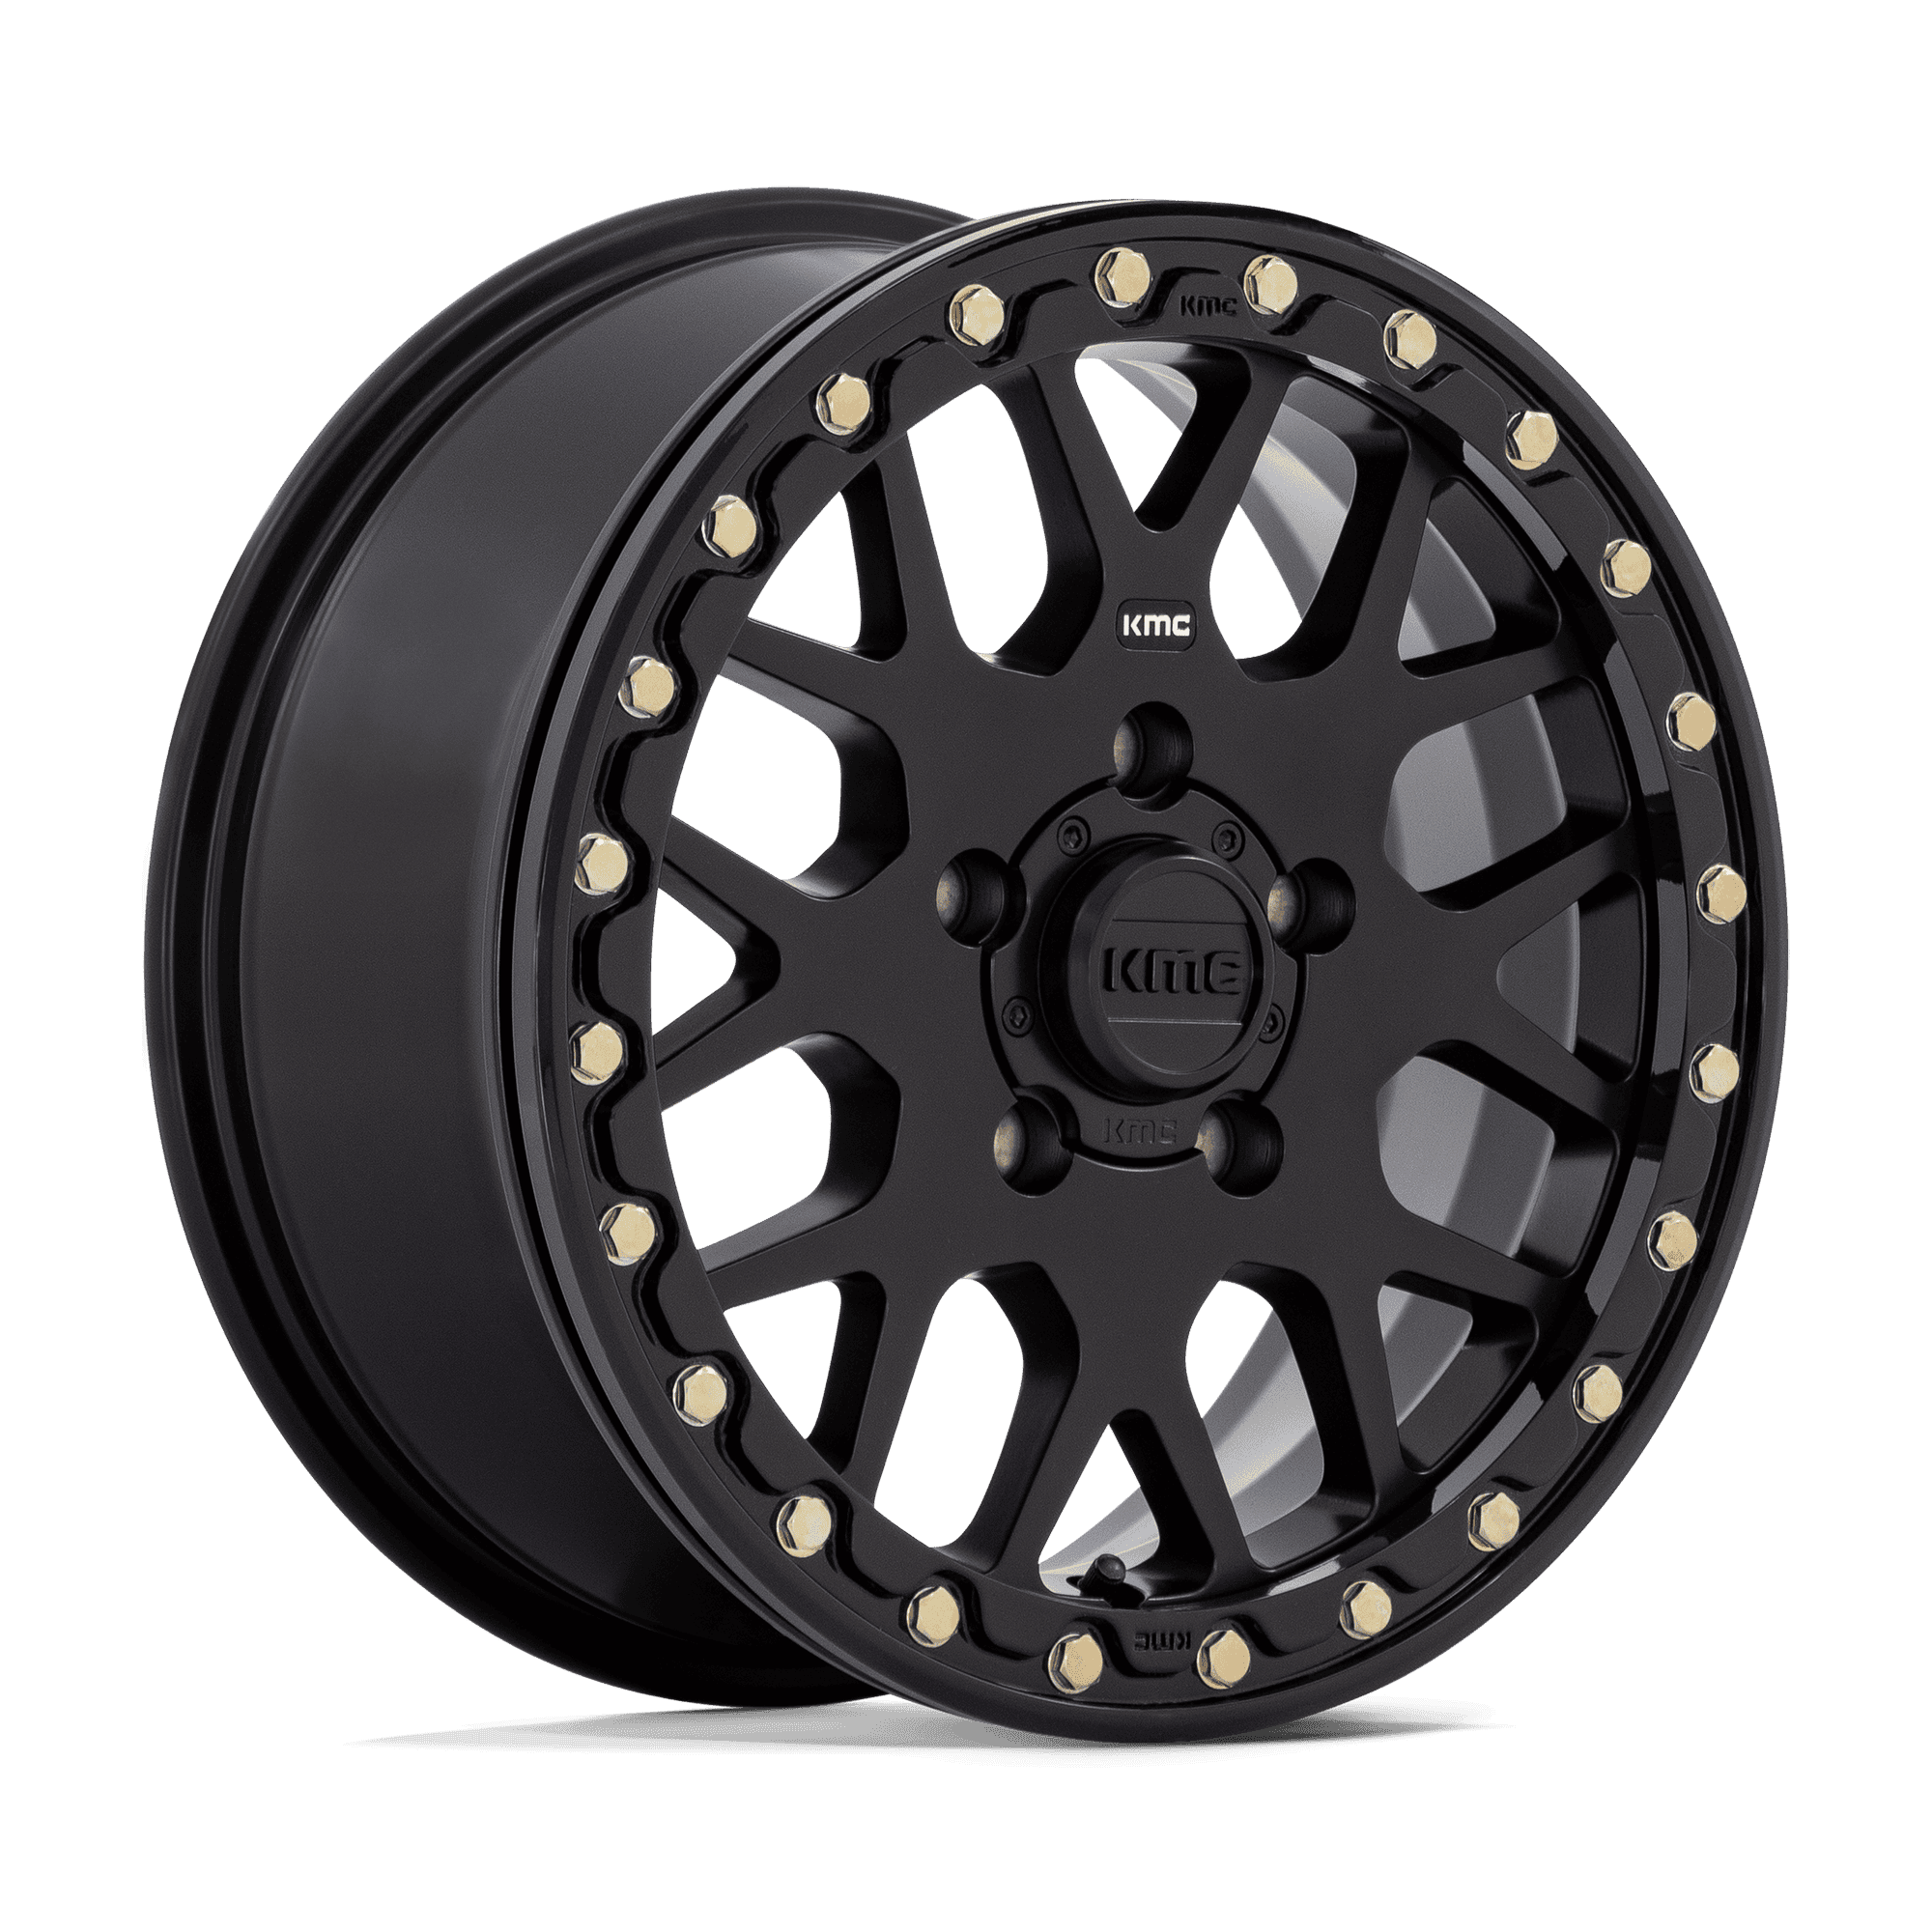 kmc wheels ks235 grenade beadlock polaris rzr pro r and polaris rzr turbo r 1.jpeg